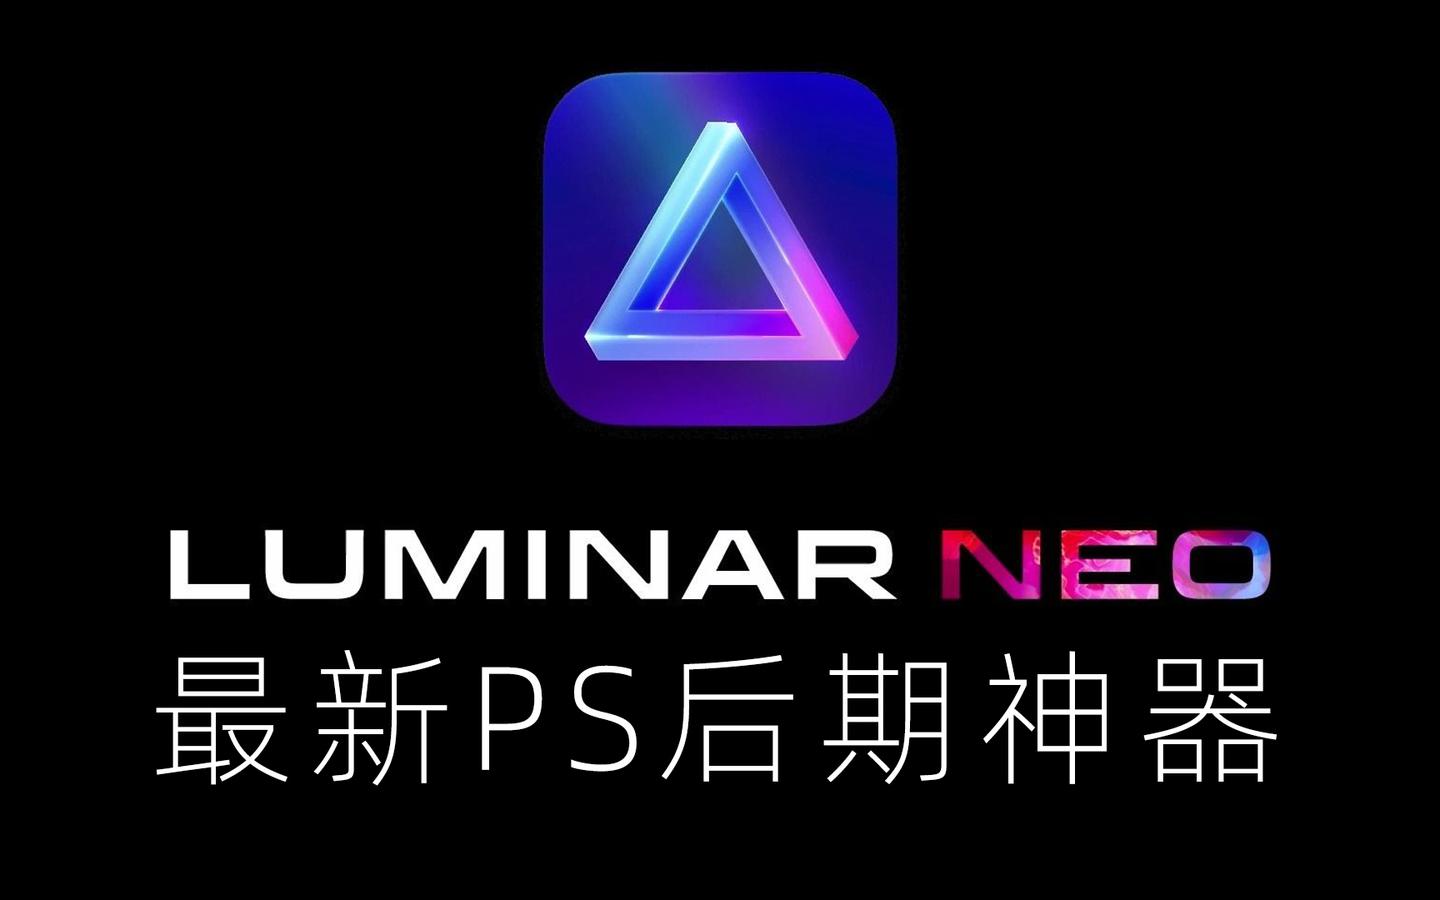 PS后期神器Luminar Neo 中文版正式发布上线了